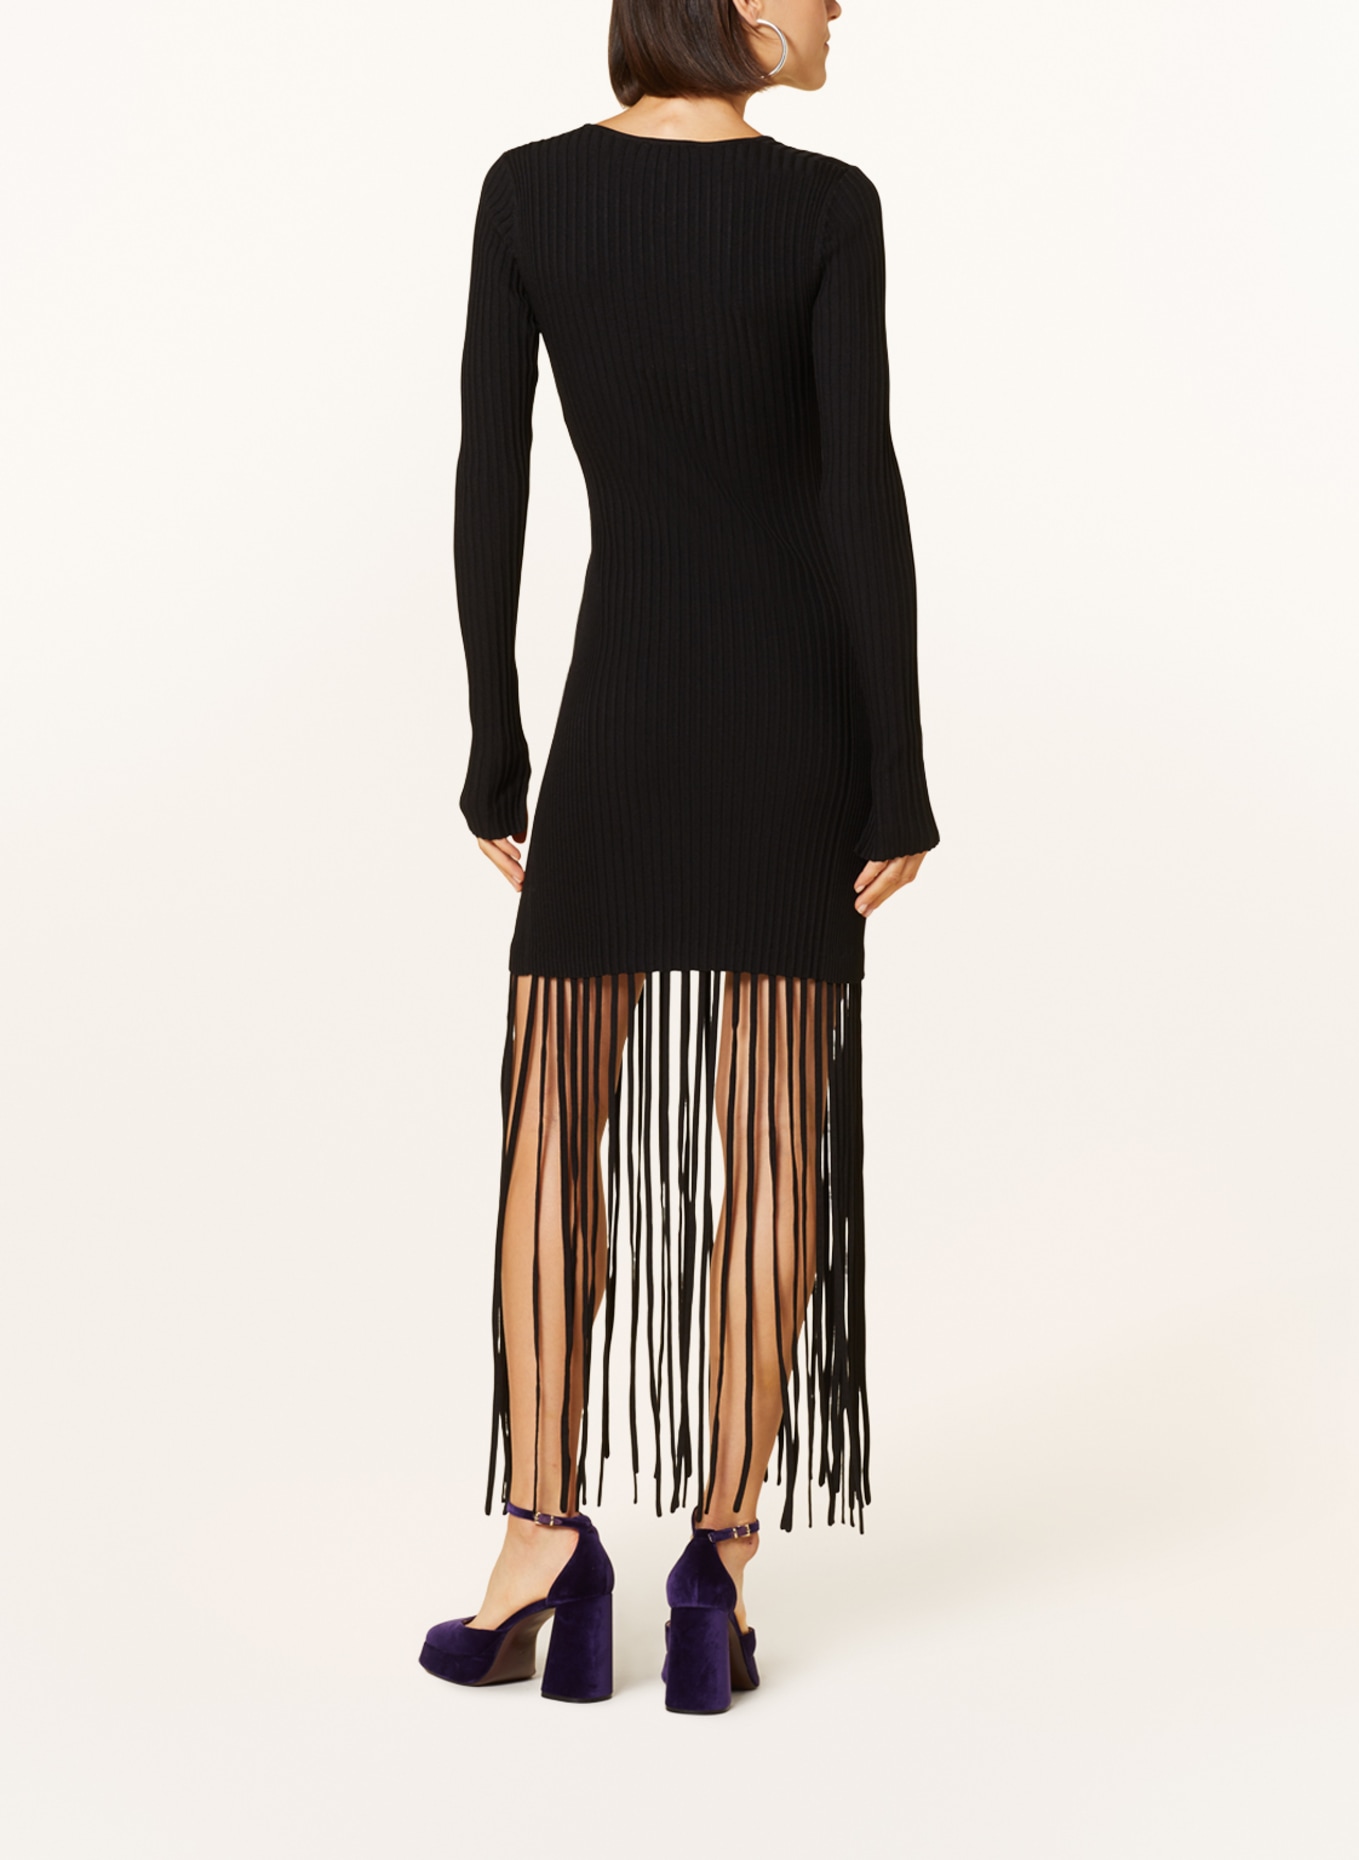 GANNI Knit dress with fringes, Color: BLACK (Image 3)